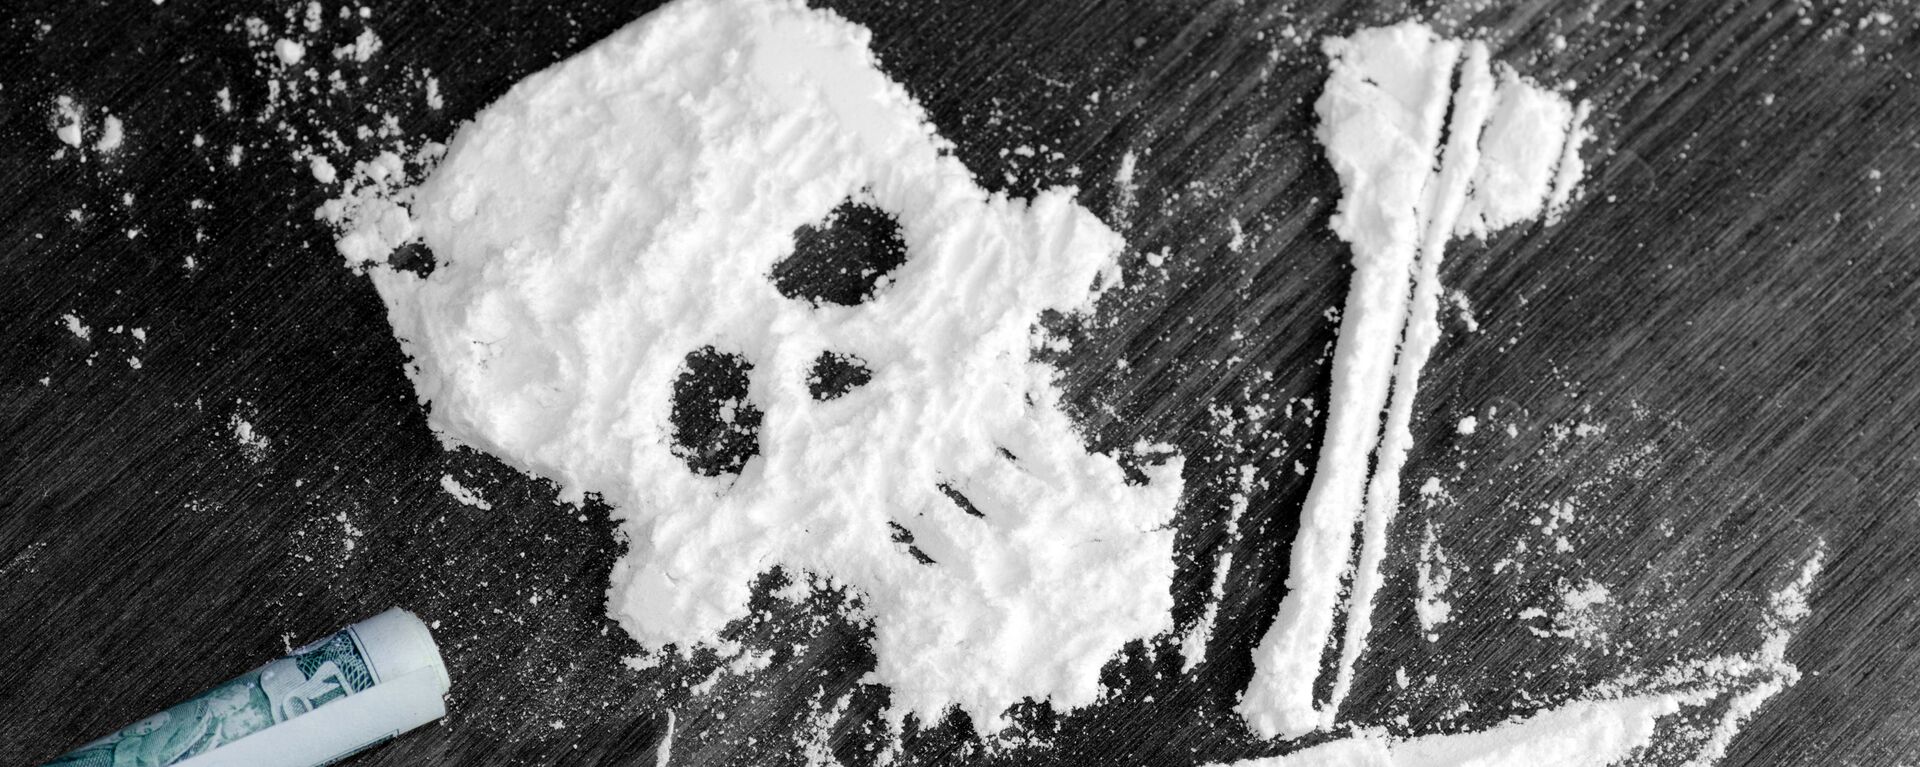 Phương tiện: Hơn 1,5 tấn cocaine dạt vào bãi biển Pháp - Sputnik Việt Nam, 1920, 04.06.2020